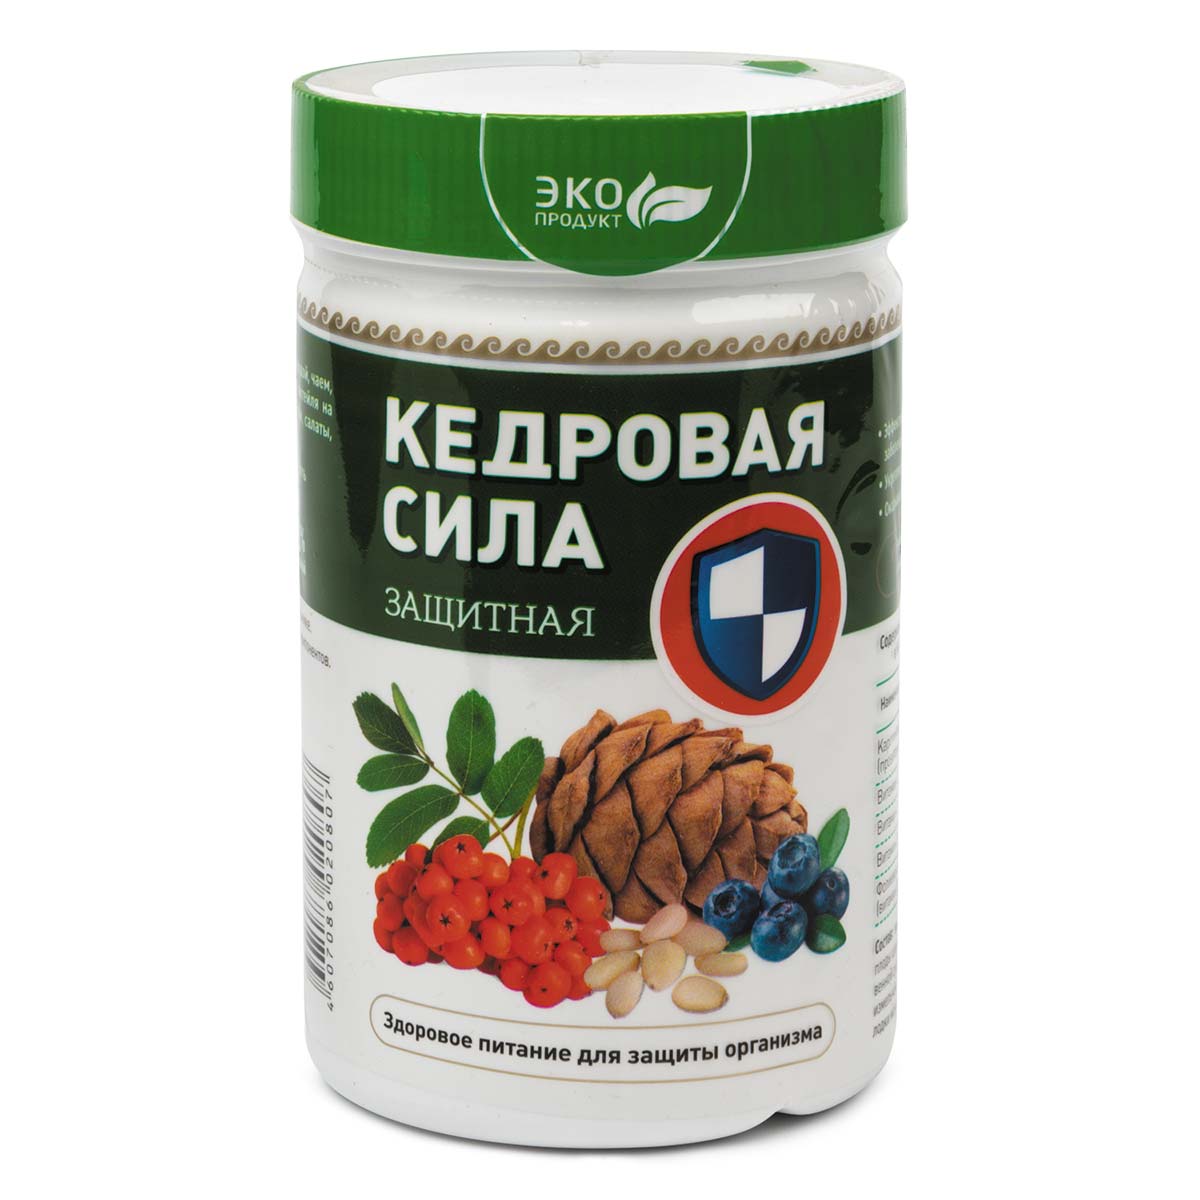 Продукт белково-витаминный «Кедровая сила - Защитная»